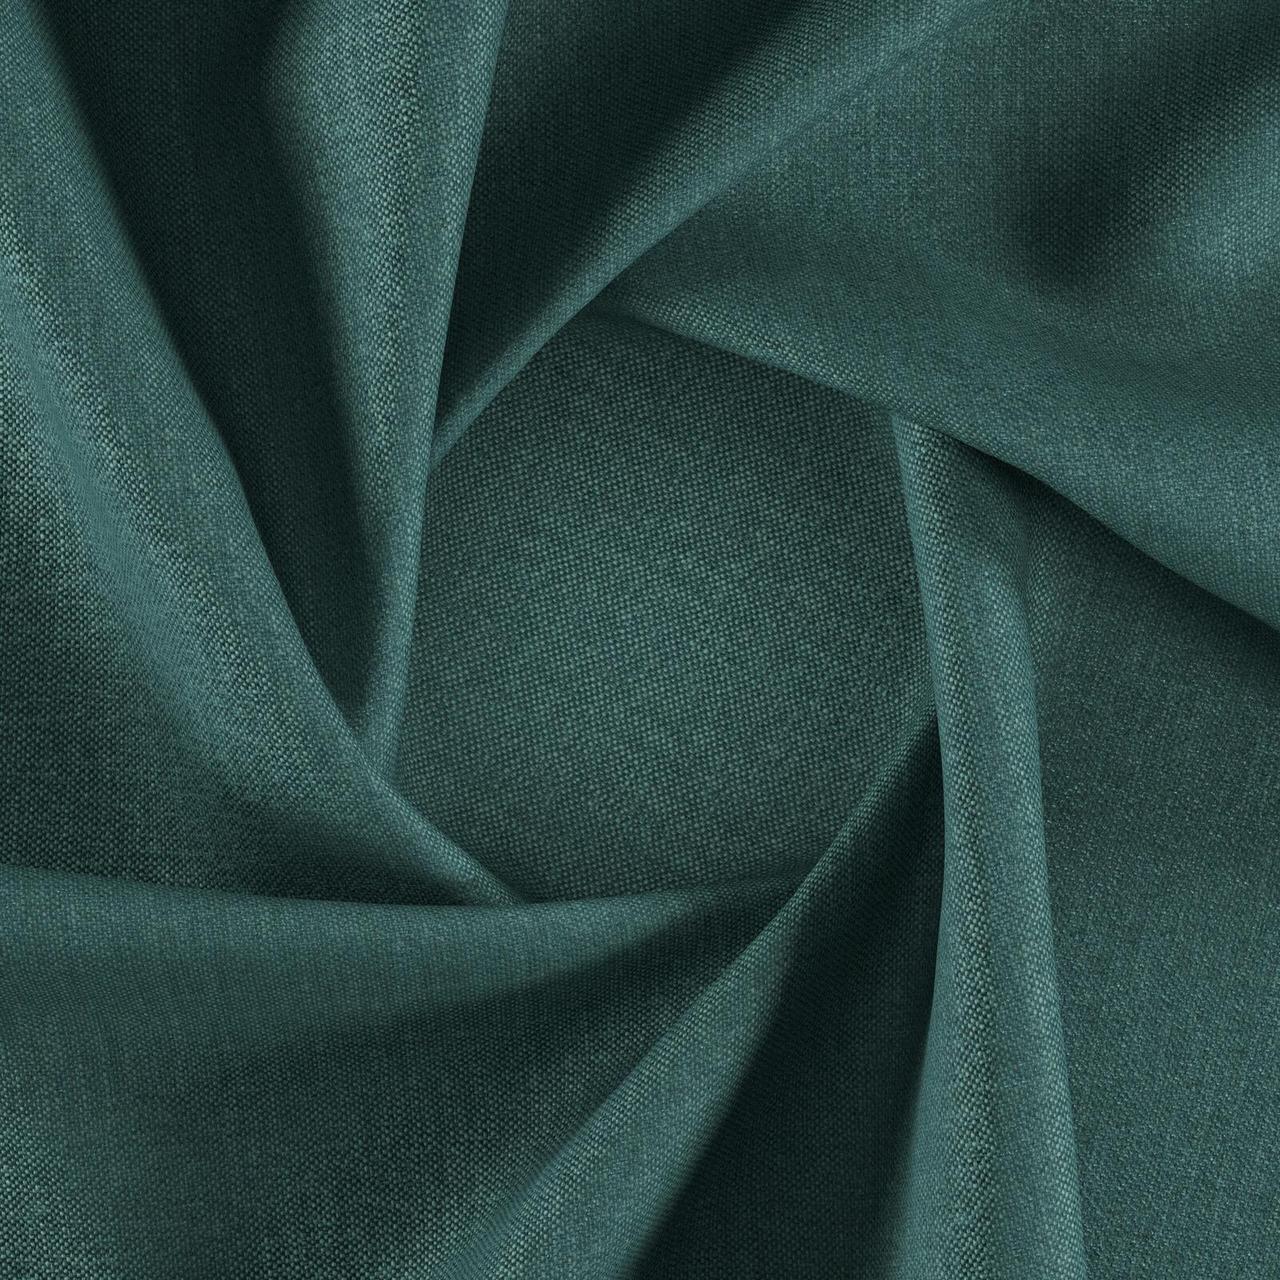 Тканина для перетяжки м'яких меблів шеніл Перфекто (Perfecto) смарагдового кольору